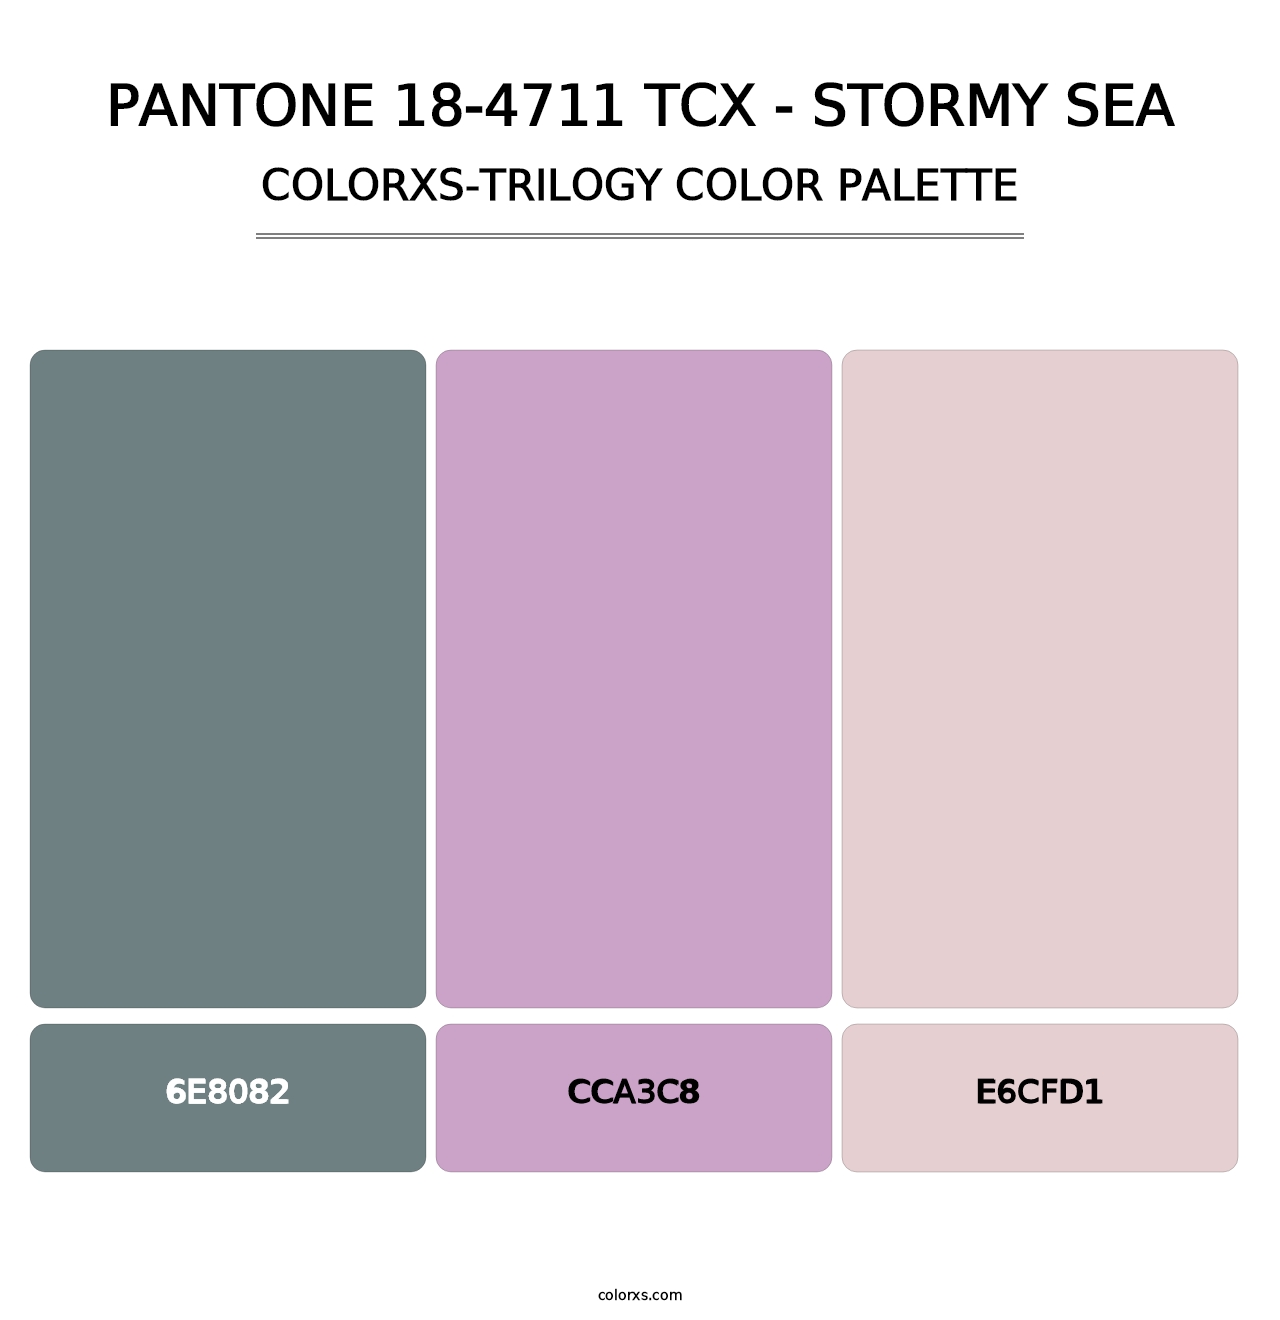 PANTONE 18-4711 TCX - Stormy Sea - Colorxs Trilogy Palette